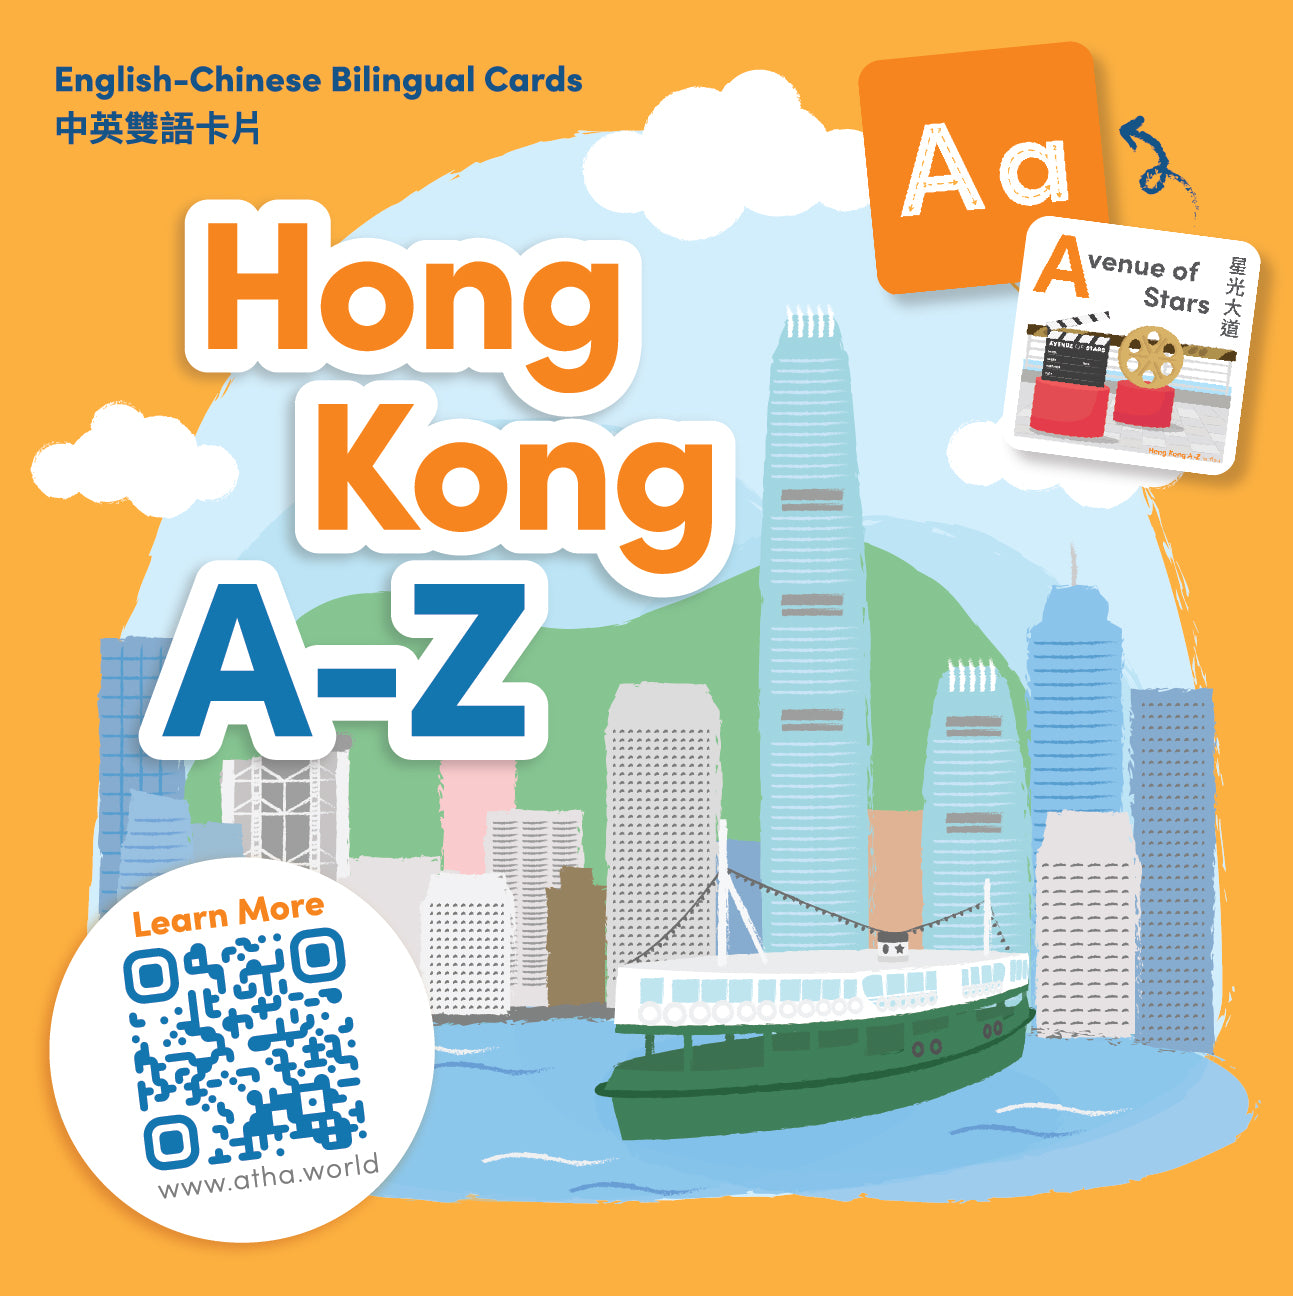 HONG KONG A-Z ENGLISH-CHINESE BILINGUAL CARDS